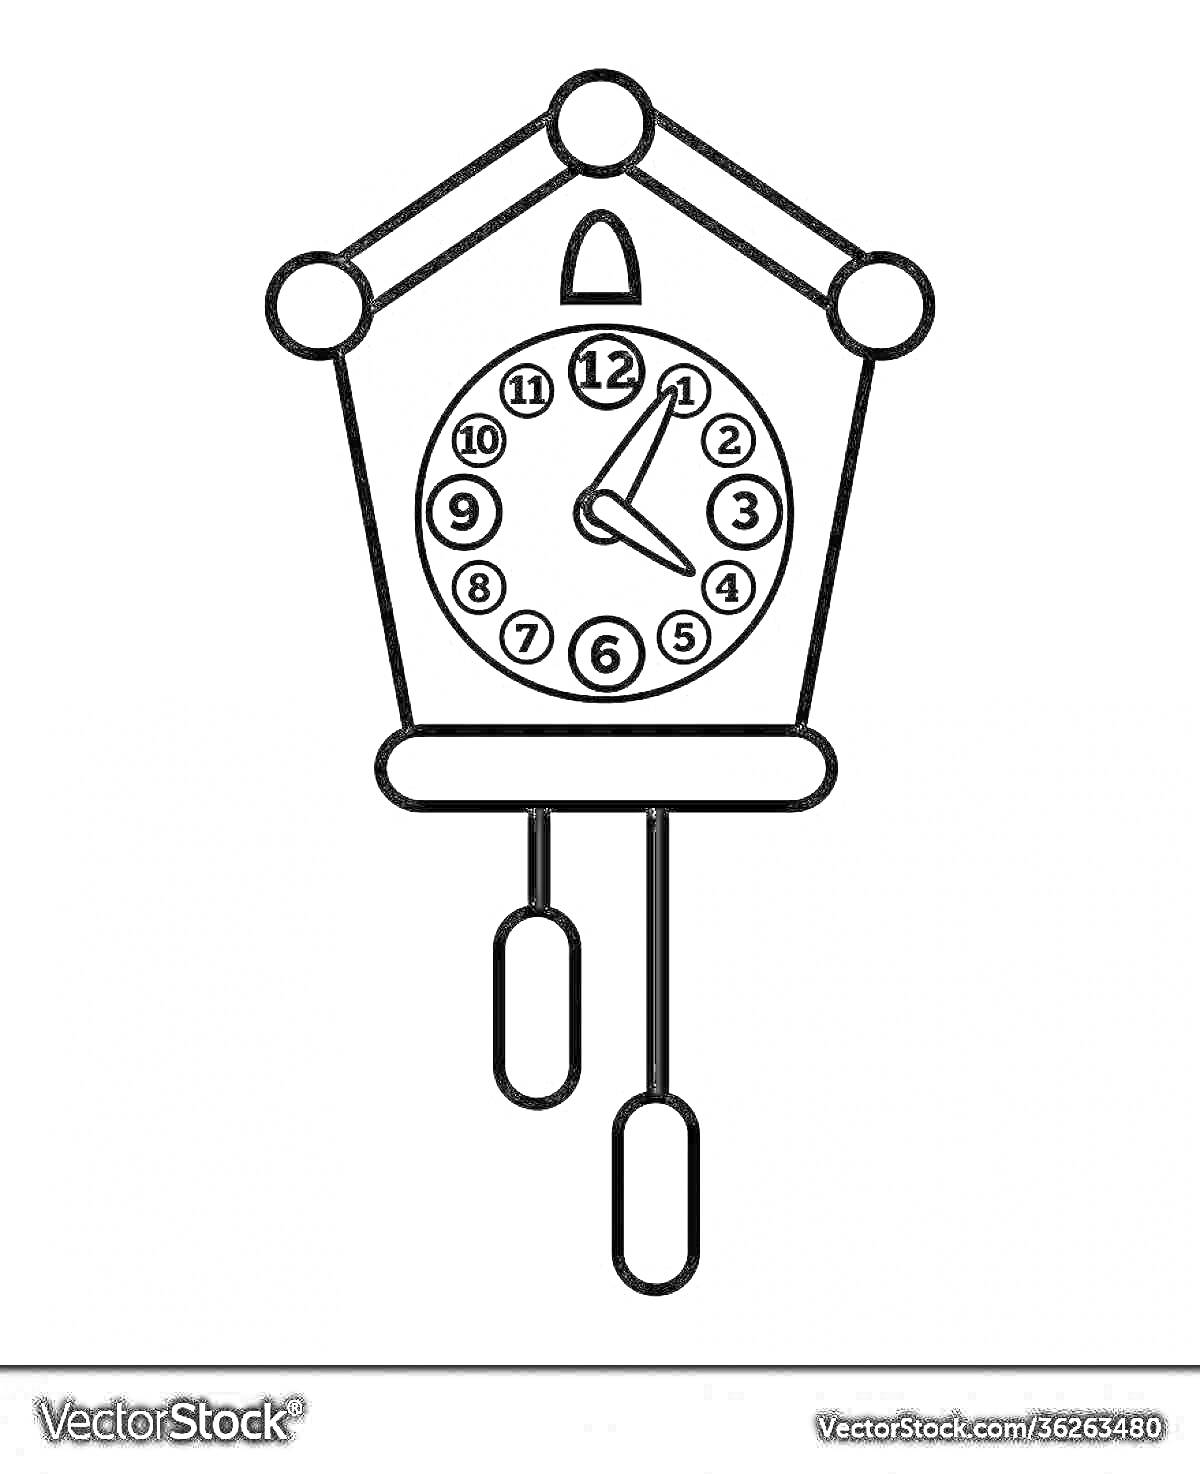 На раскраске изображено: Часы, Настенные часы, Маятник, Циферблат, Римские цифры, Стрелки часов, Колокол